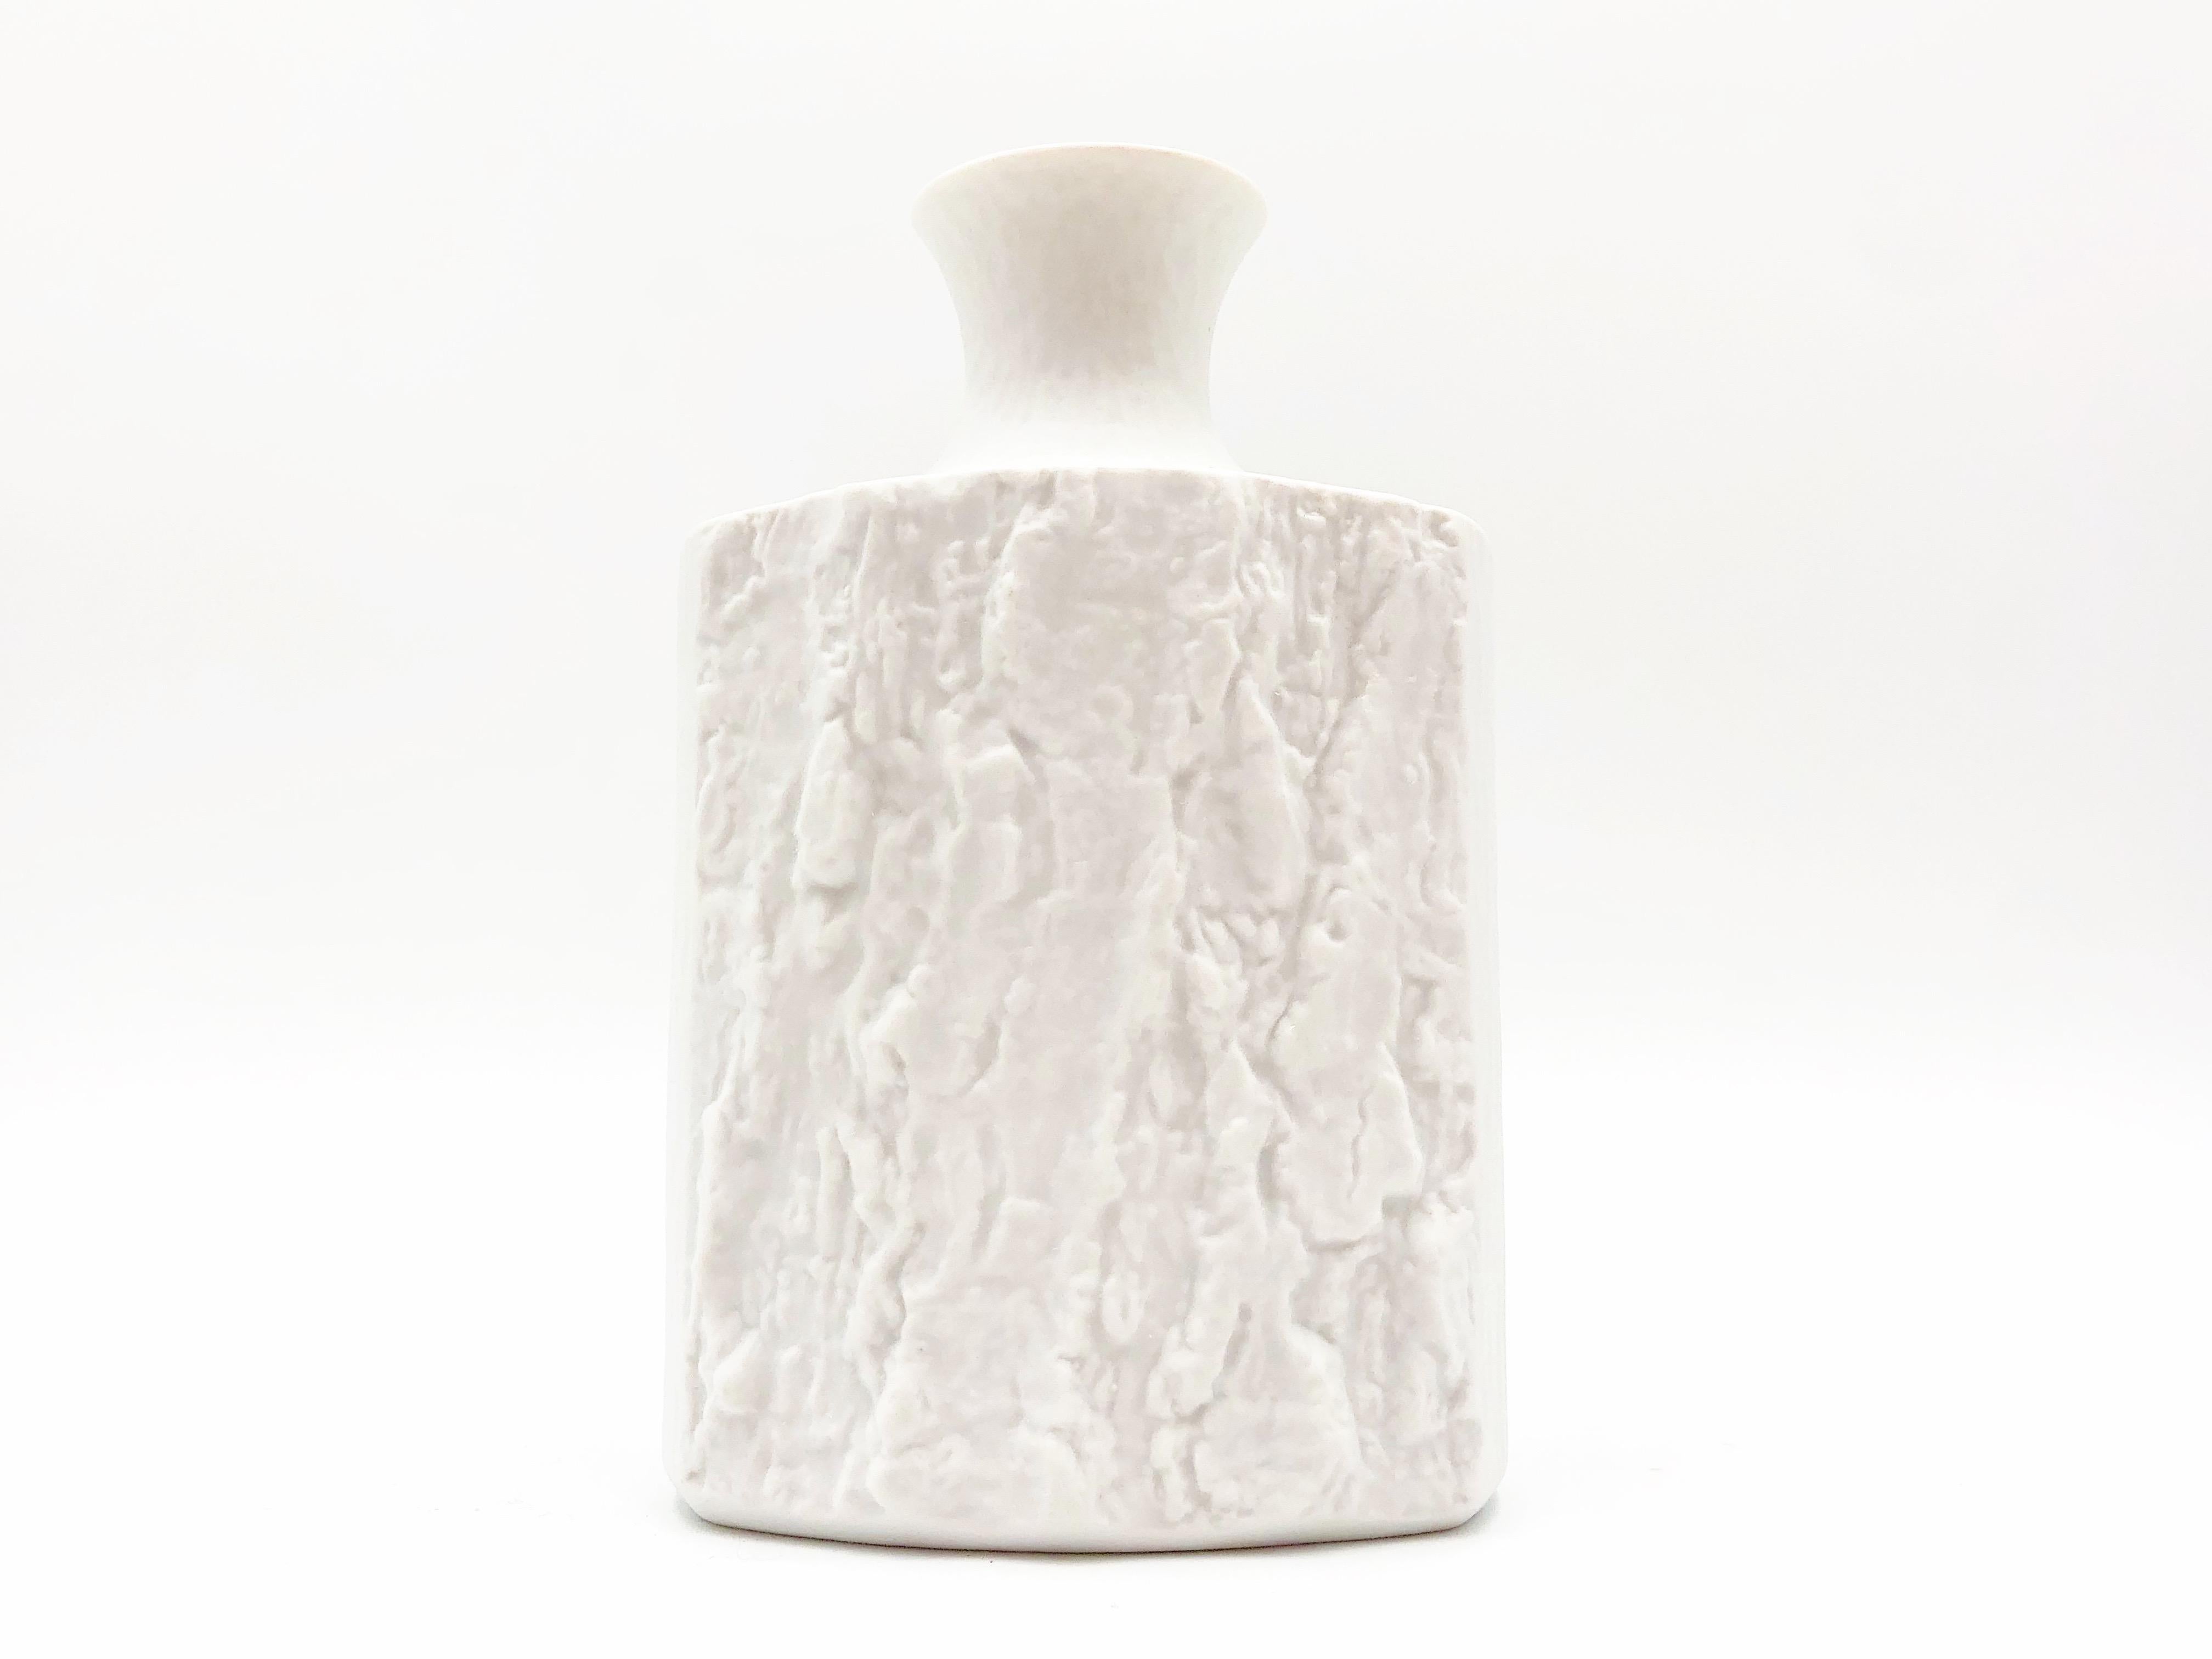 Beautiful vintage fine bone porcelain decorative vase by Bareuther, circa 1970s.

Details:
- 7